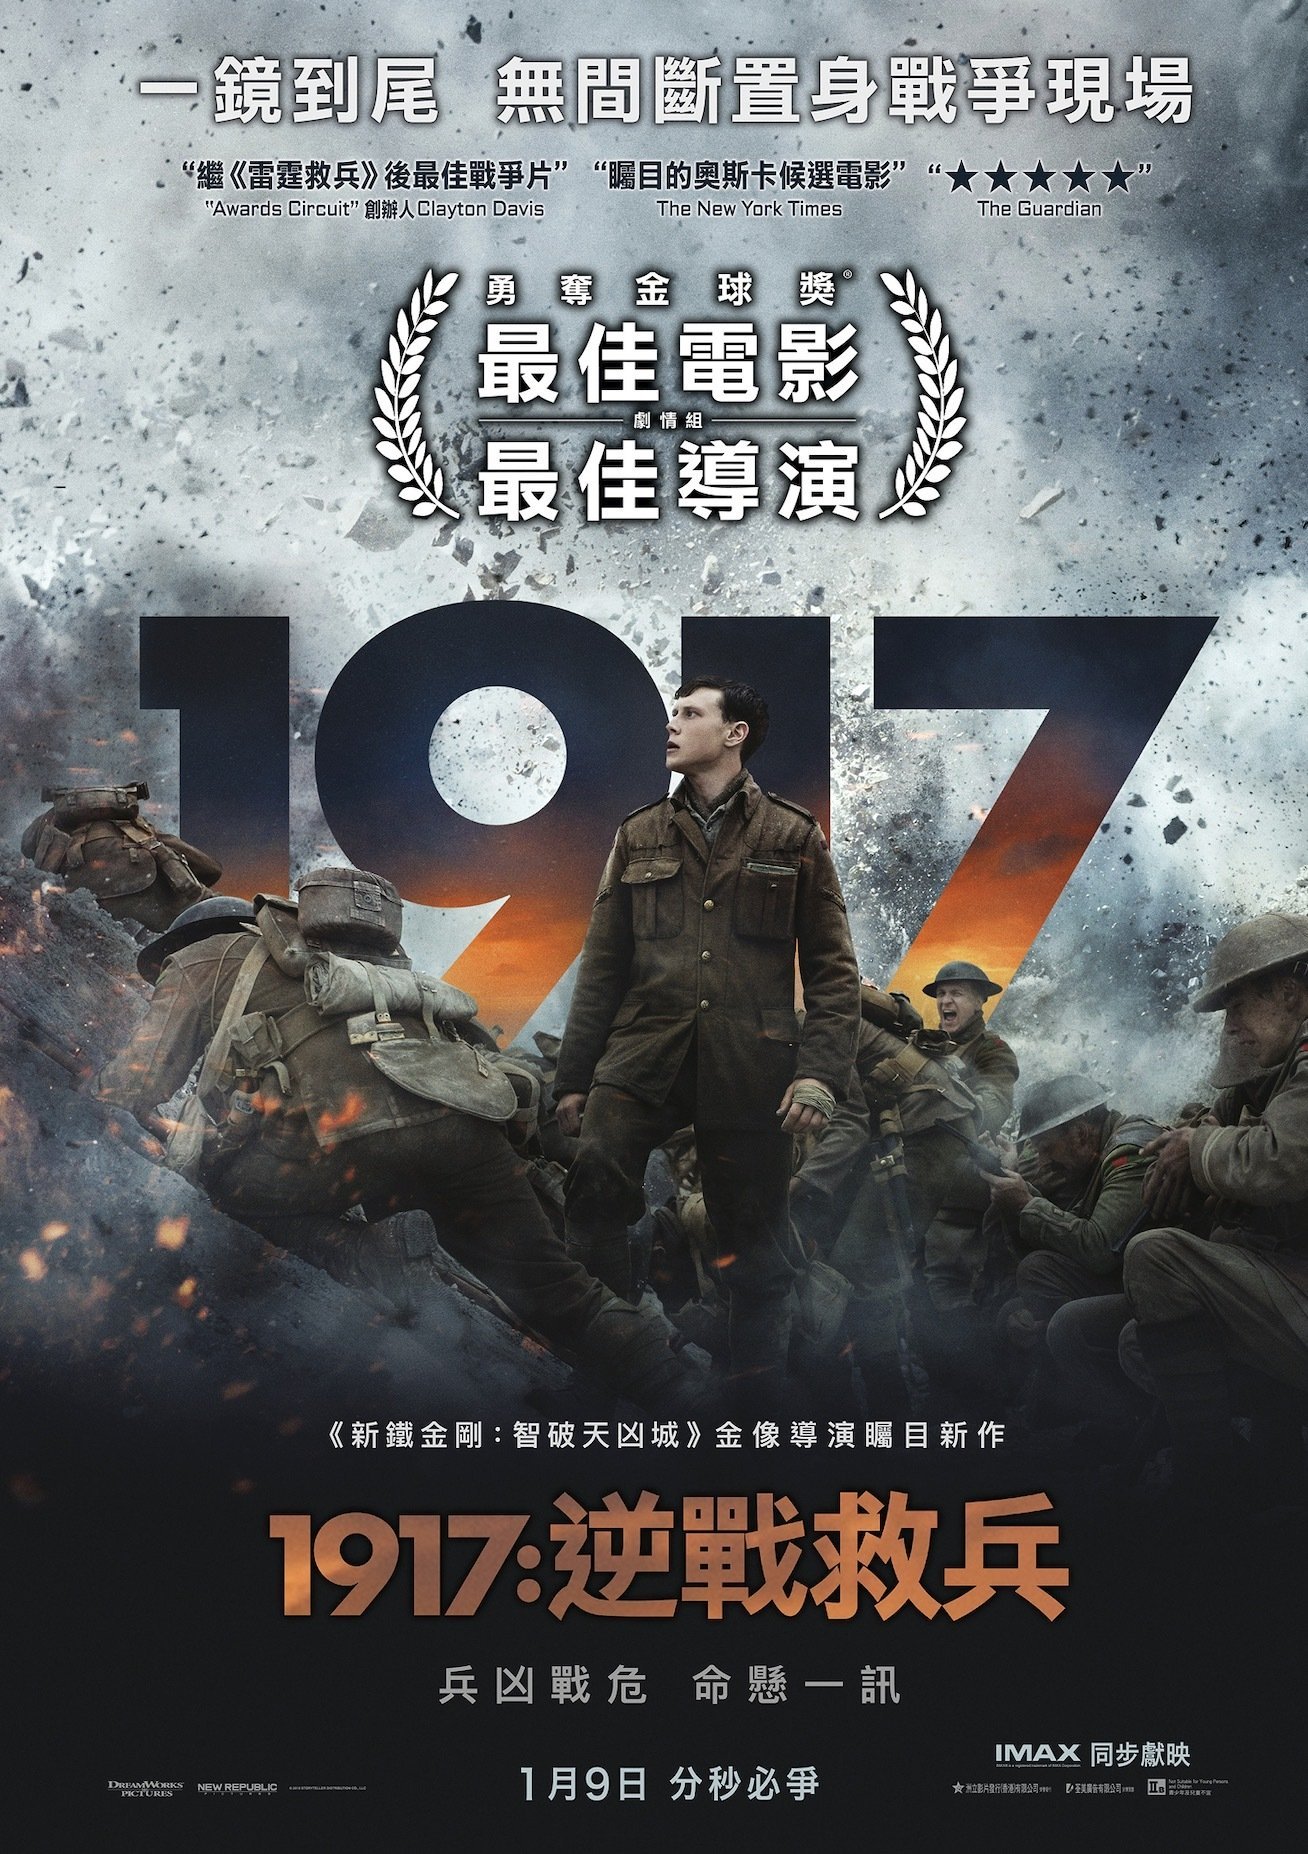 1917：逆戰救兵 (4DX版)電影圖片 - 1917_poster_hk_1578963365.jpg